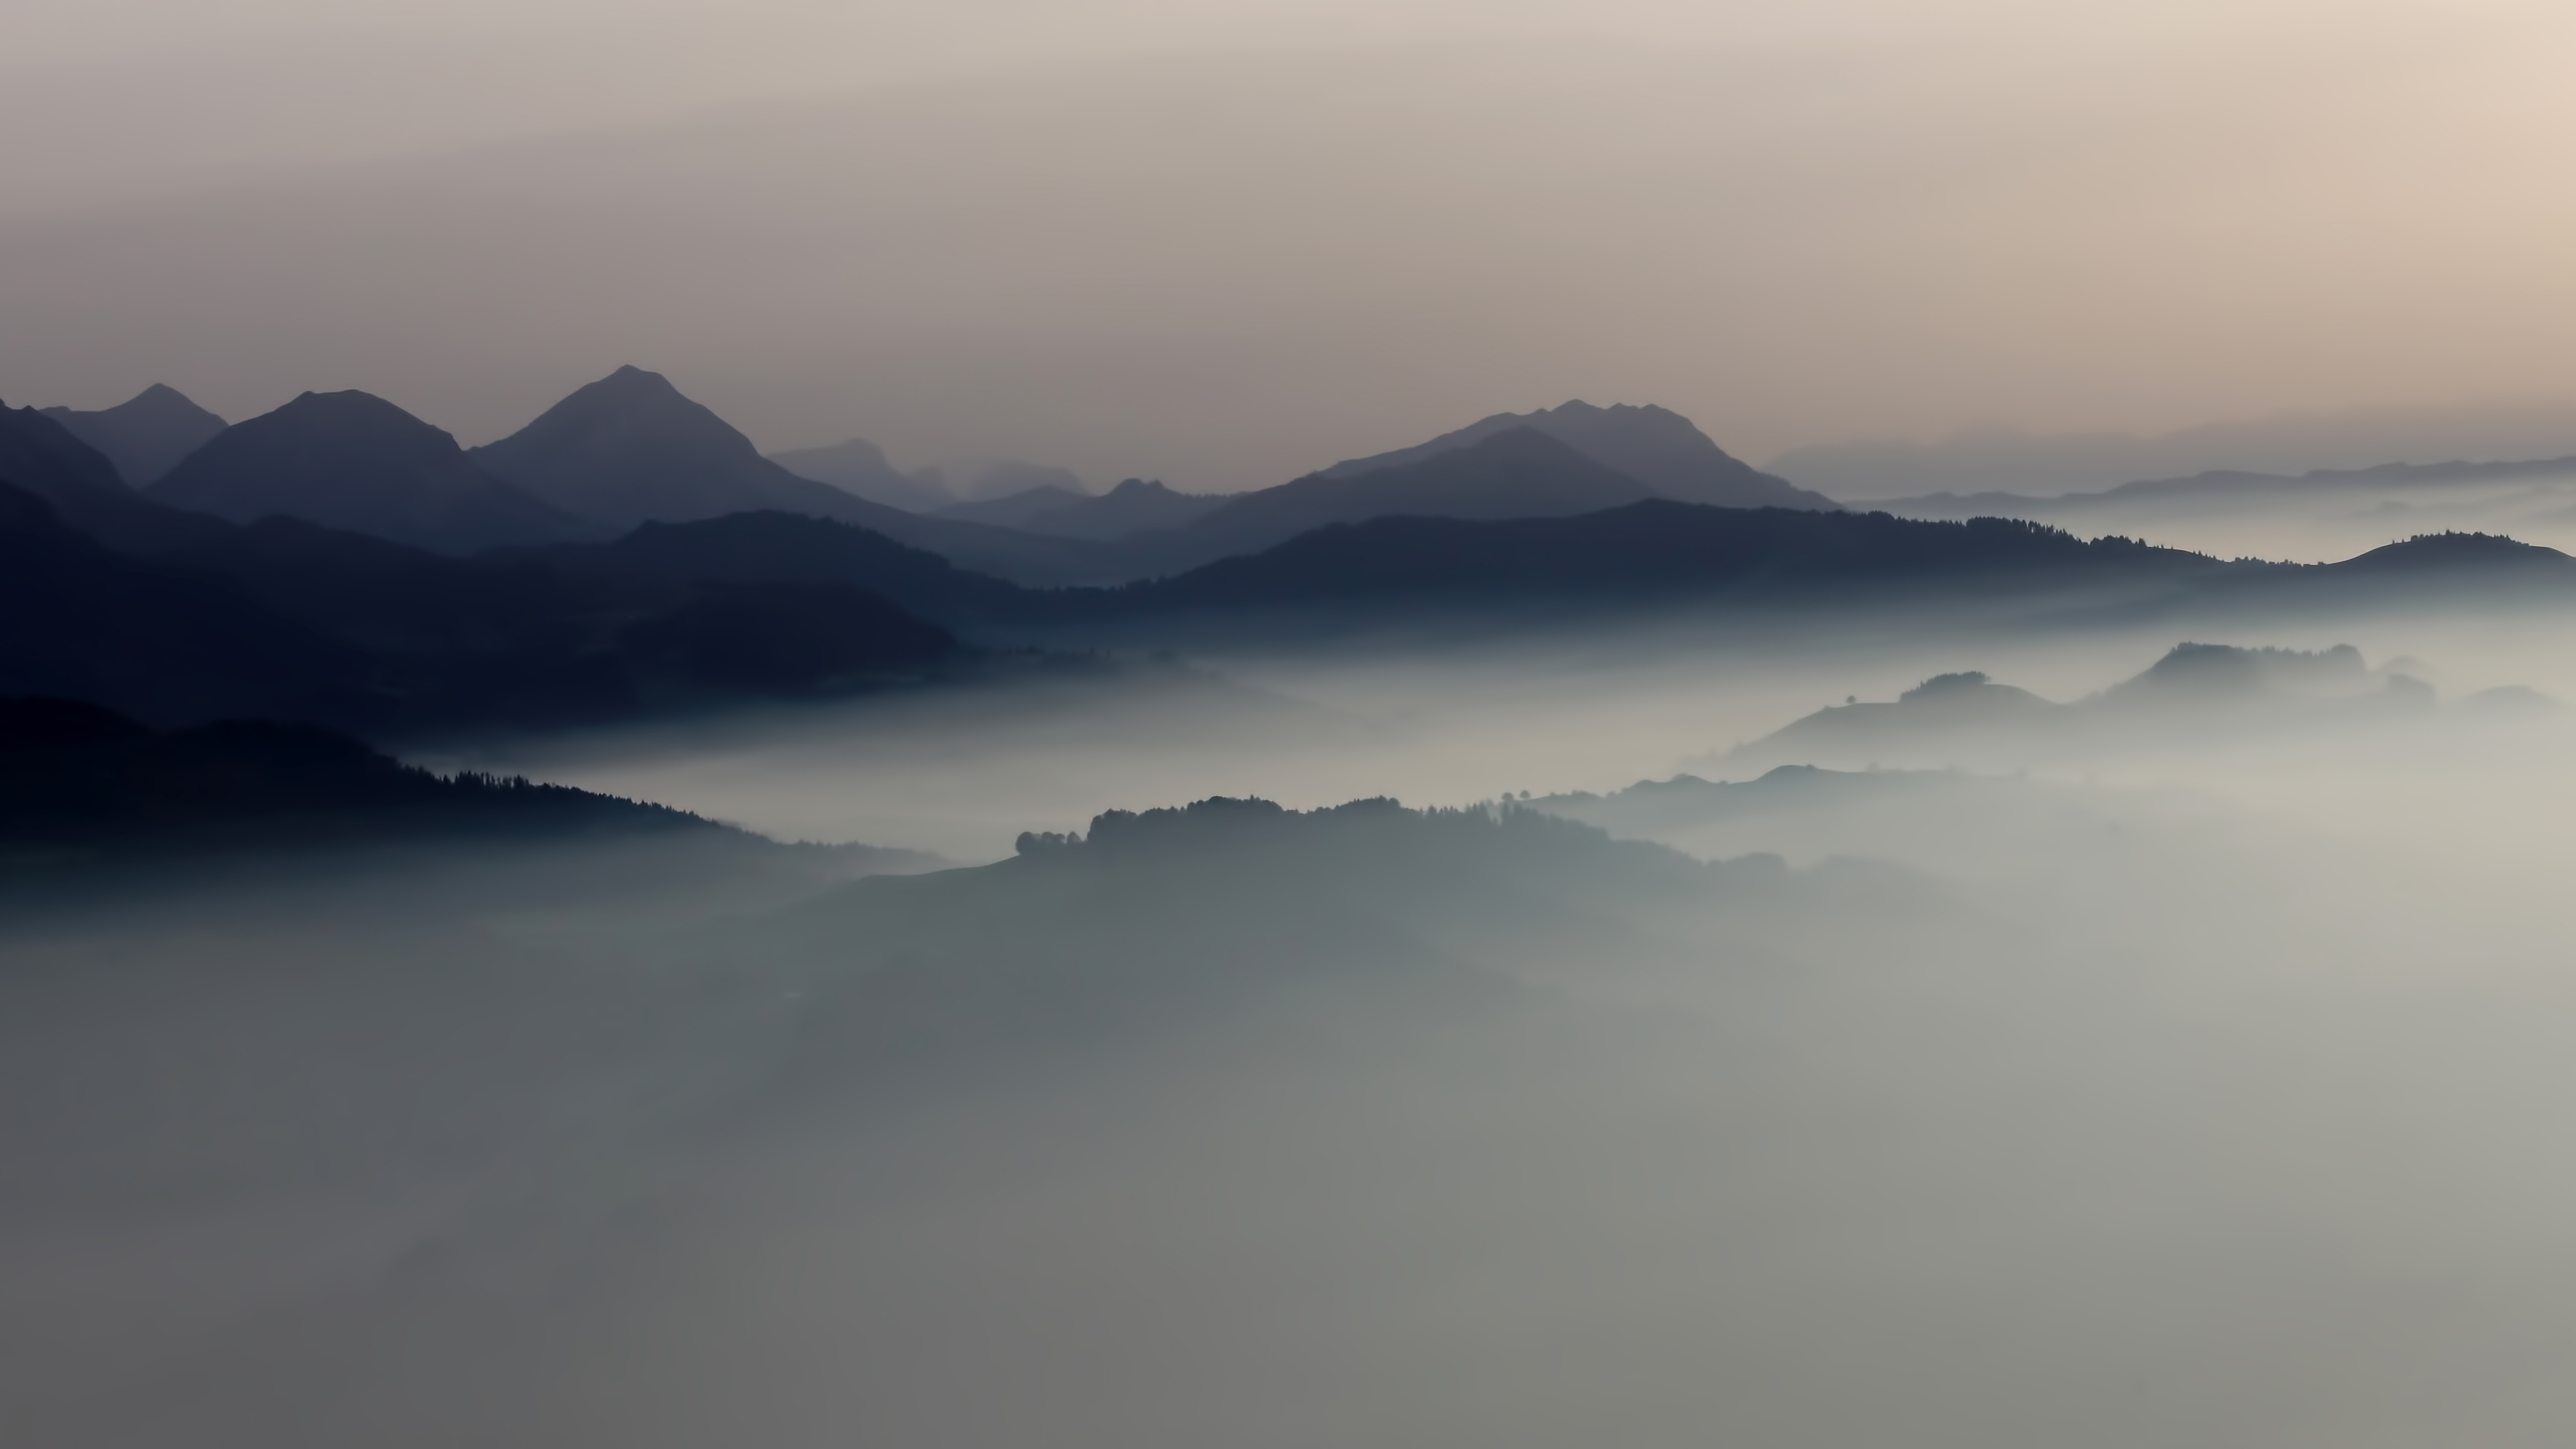 General 5120x2880 landscape mist mountains sunrise